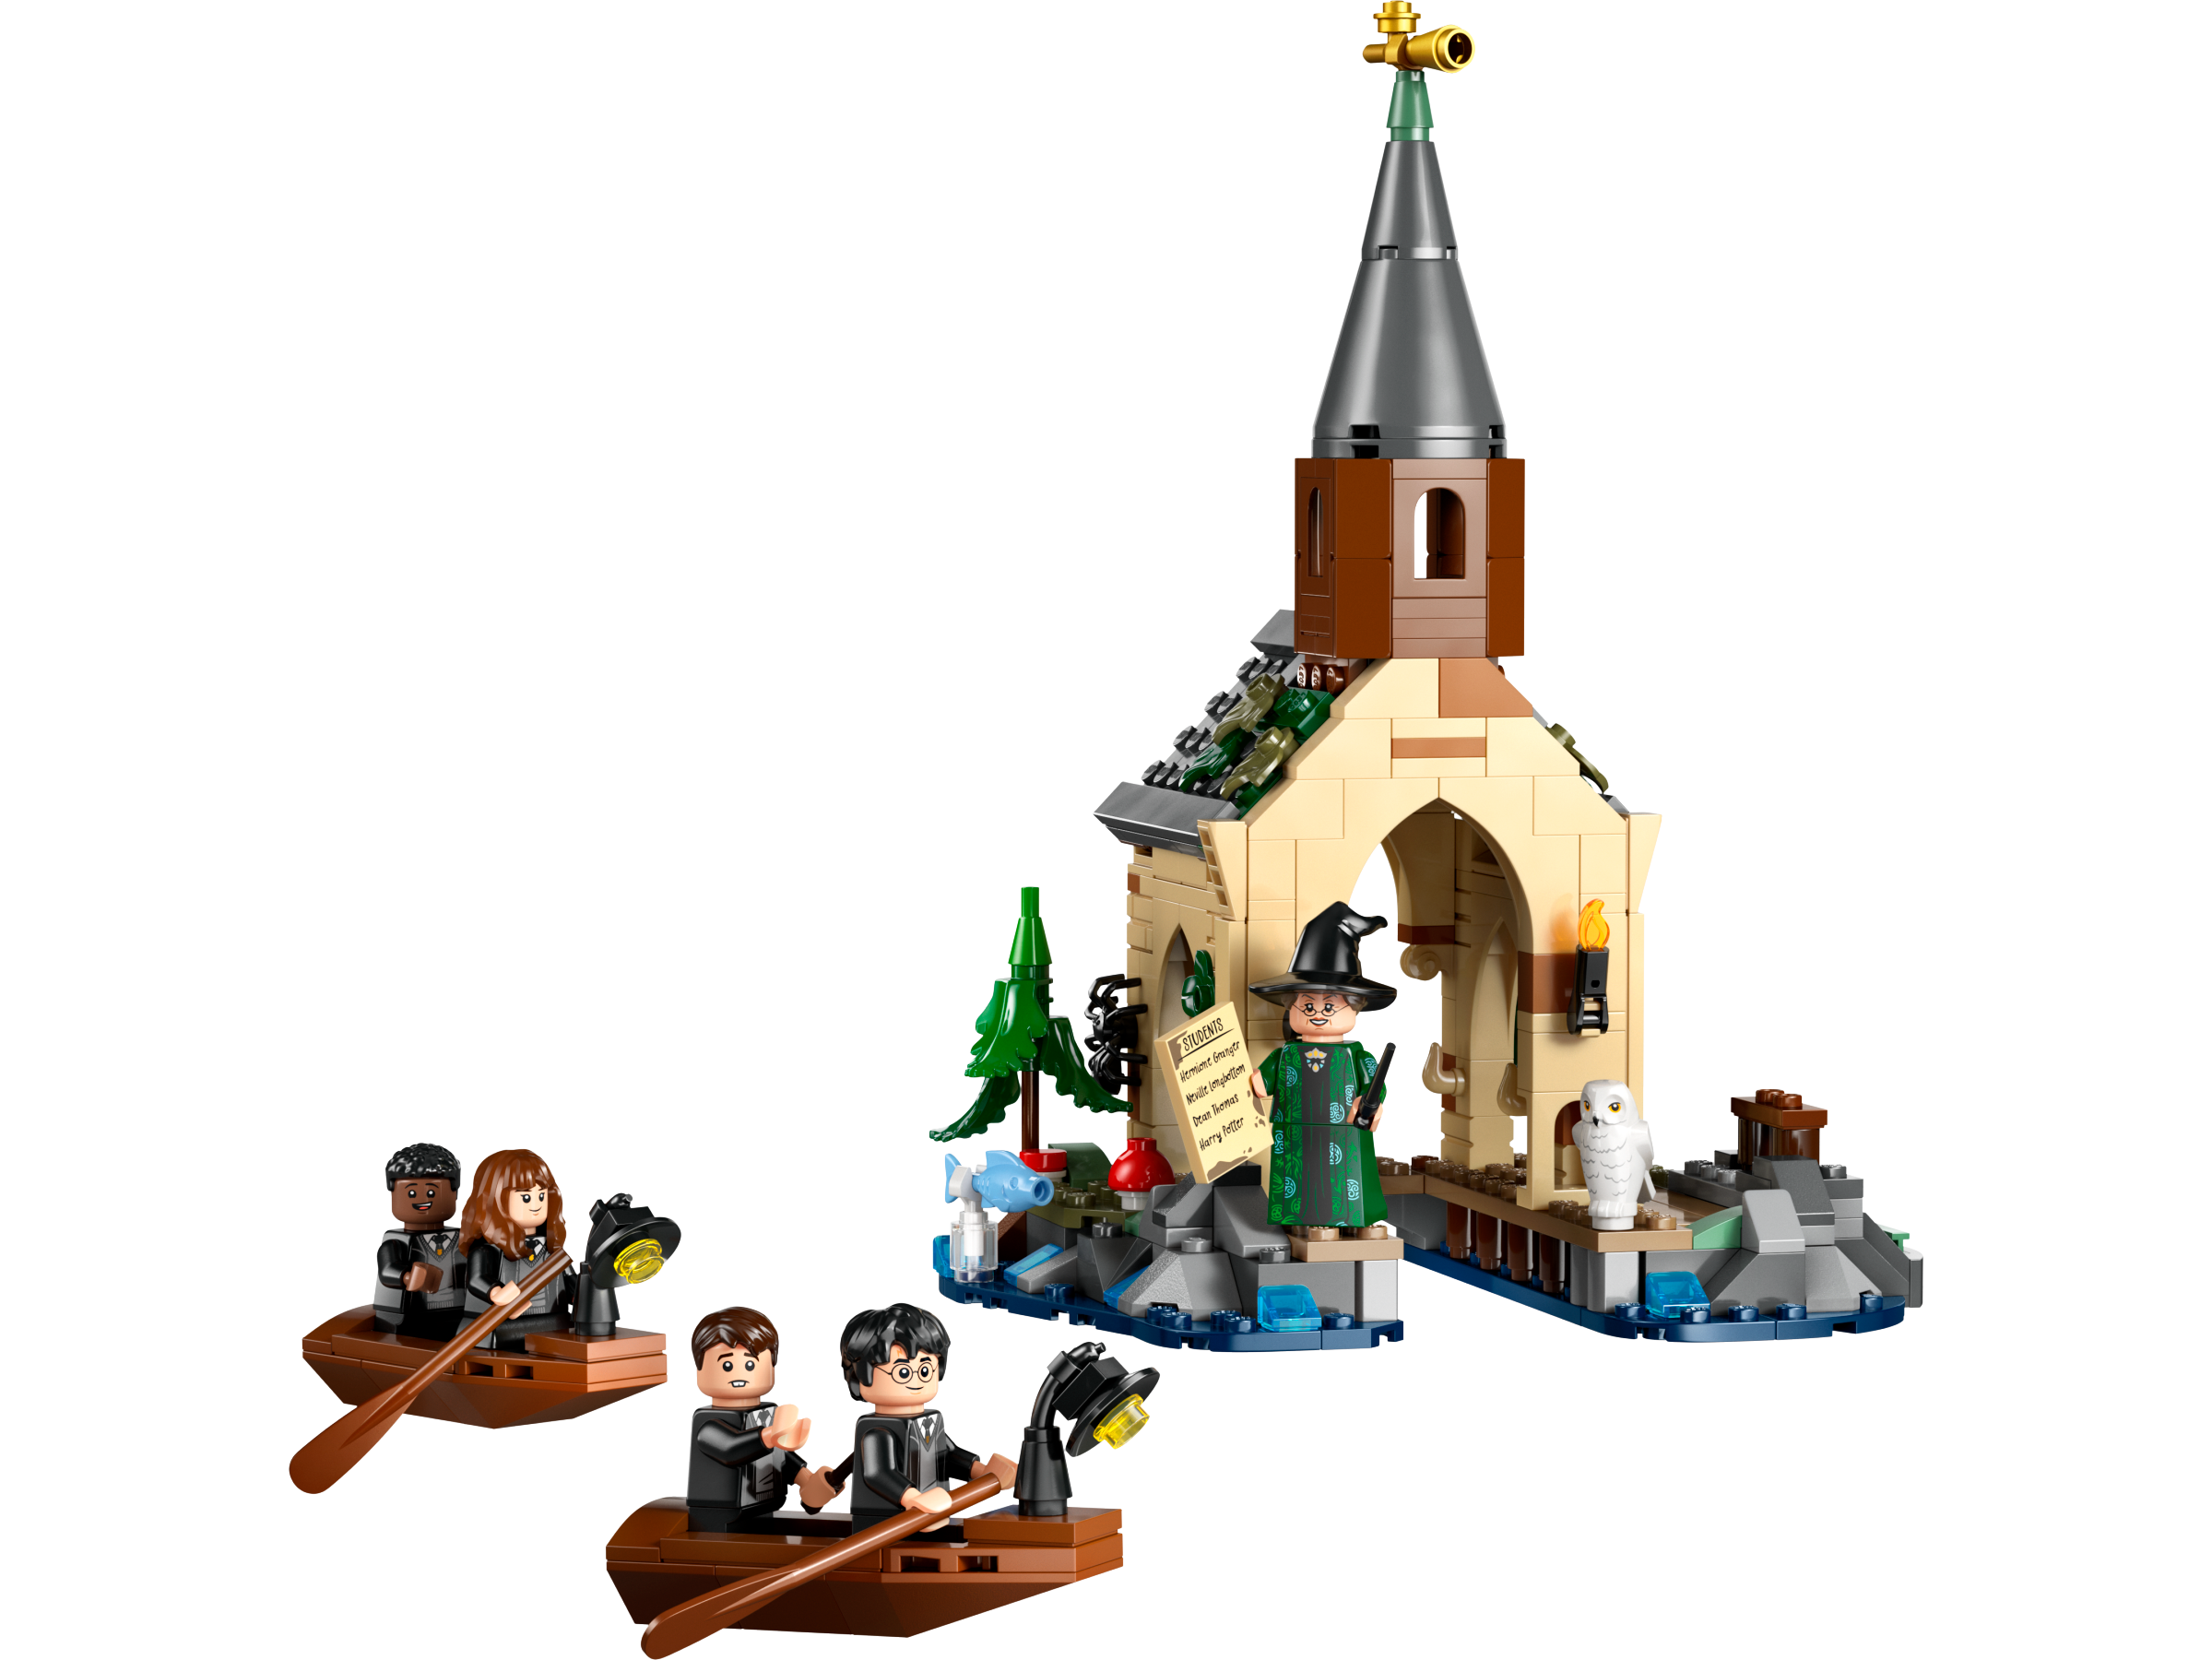 LEGO Harry Potter 76426 Bootshaus von Schloss Hogwarts